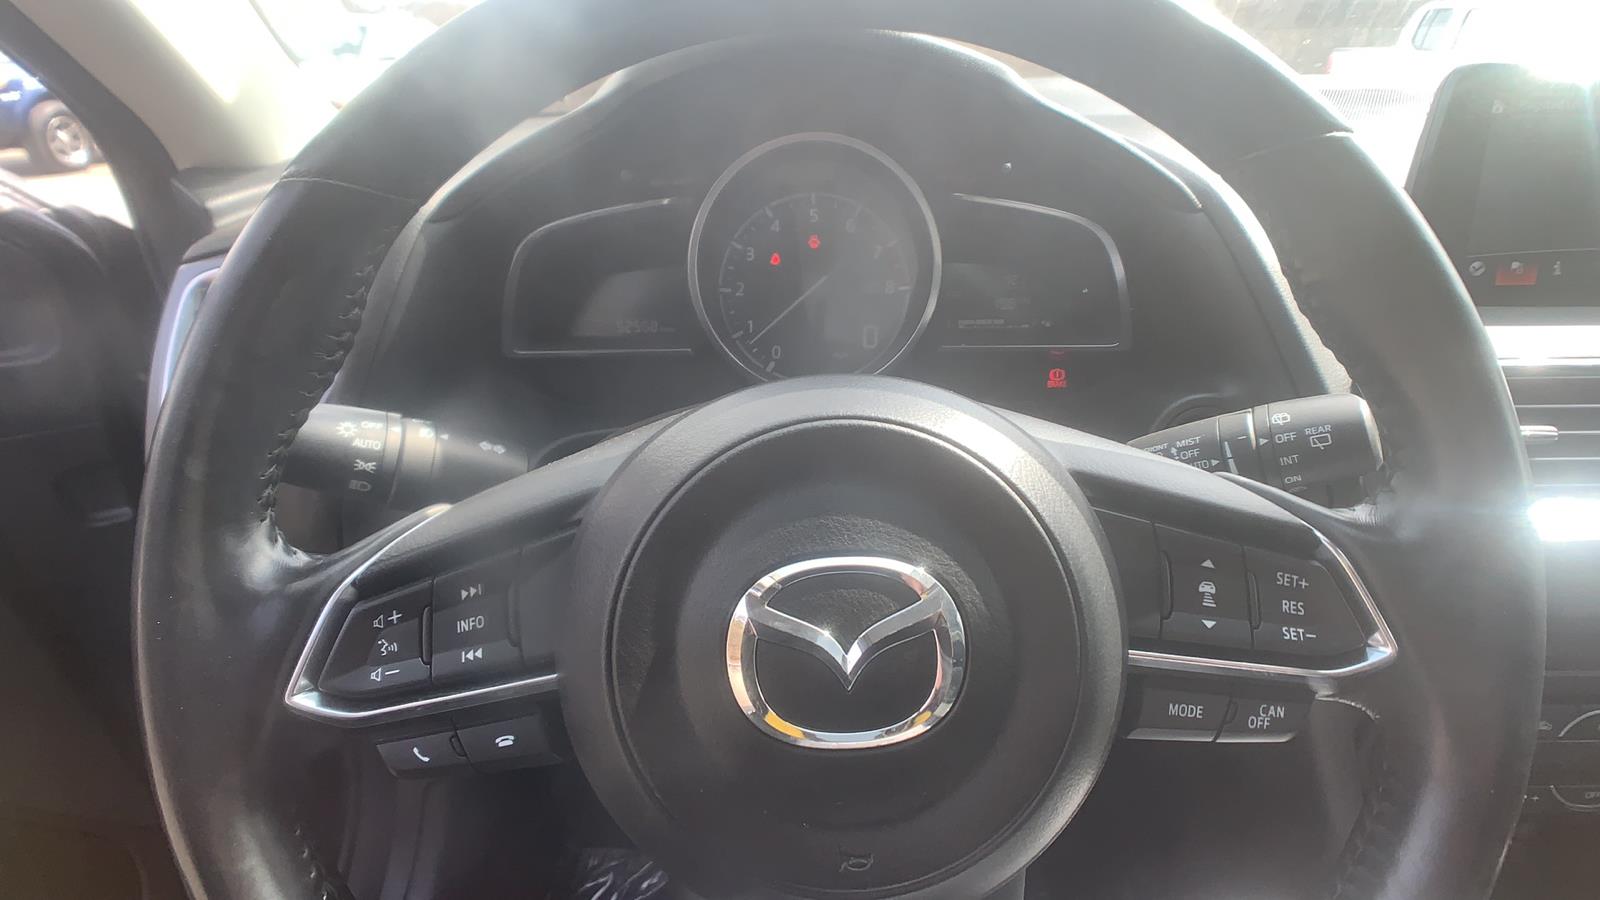 2018 Mazda Mazda3 5-Door Hatchback